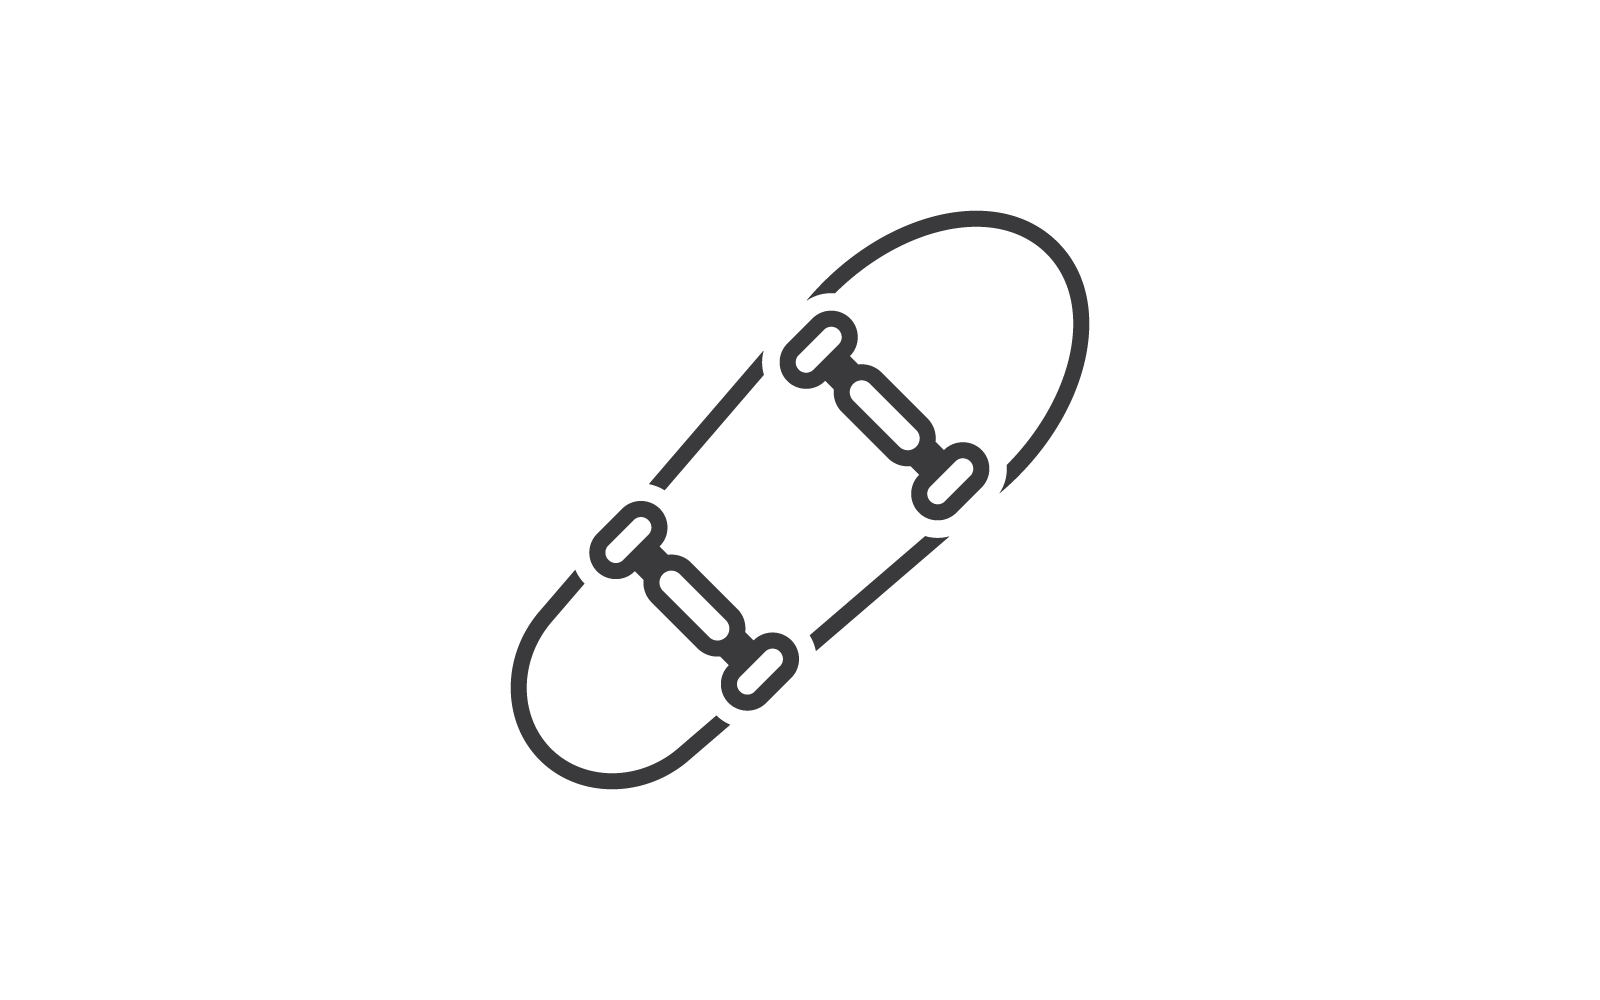 Deskorolka ikona ilustracja wektor Płaska konstrukcja to logo i ikona rozrywki sportowej skater